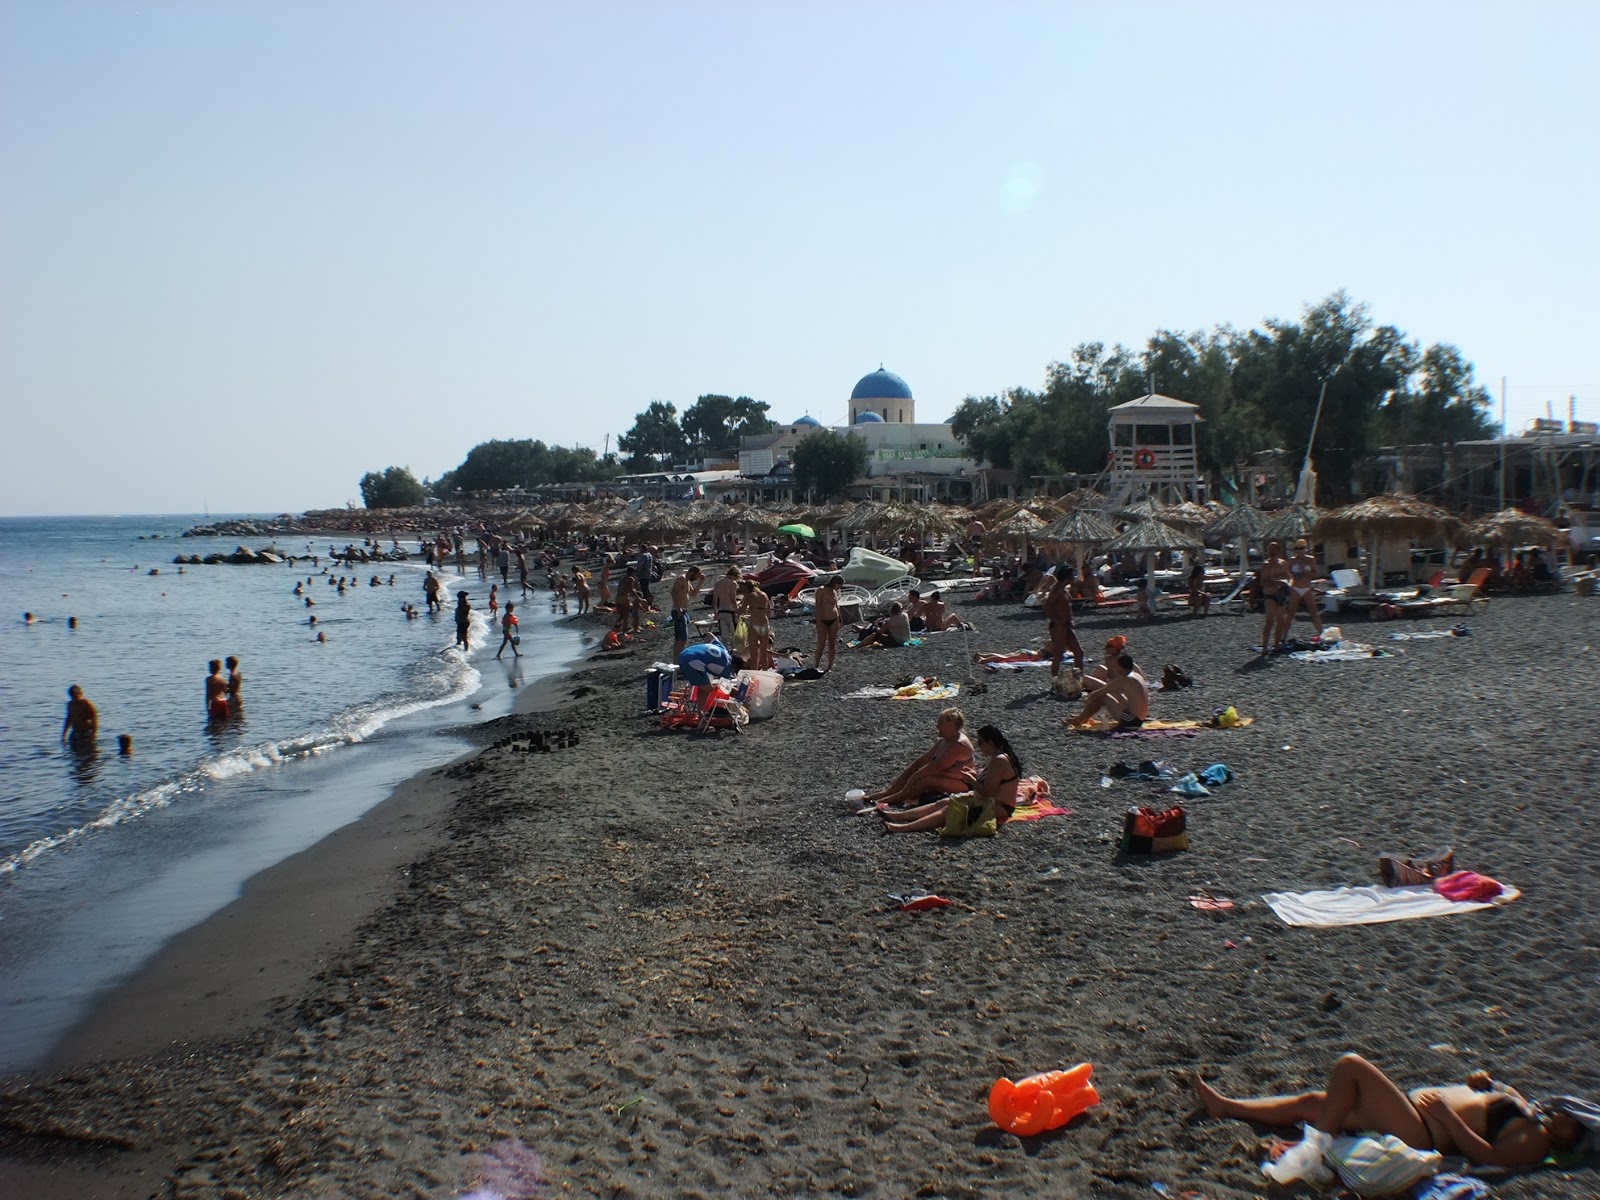 Perissa Plajı'in fotoğrafı geniş plaj ile birlikte